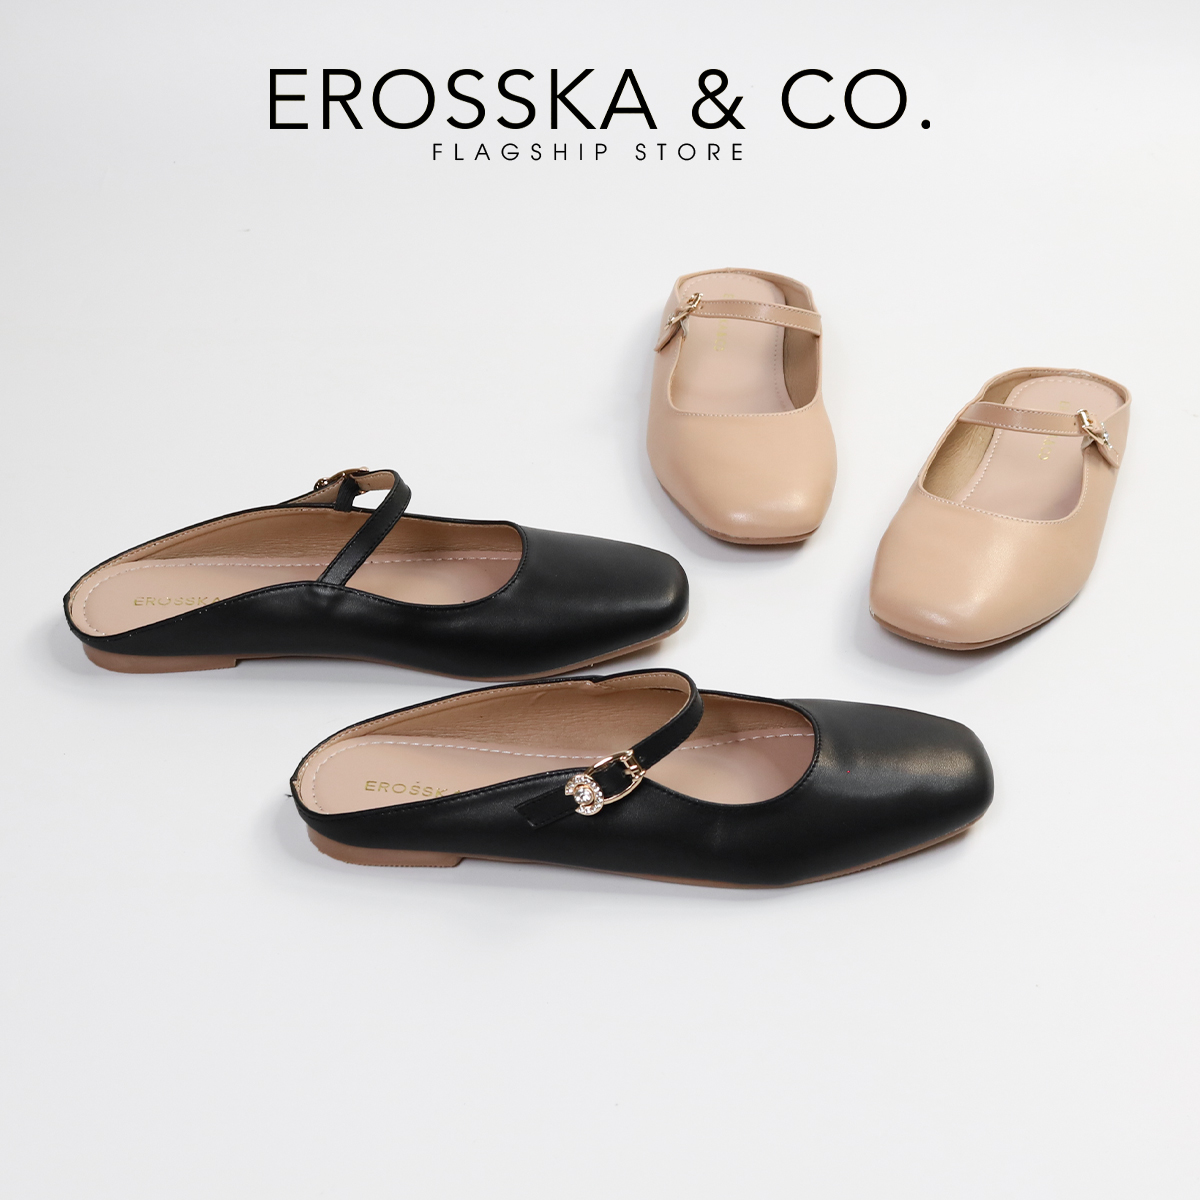 Erosska - Giày nữ đế bệt quai ngang phong cách thanh lịch - EF021